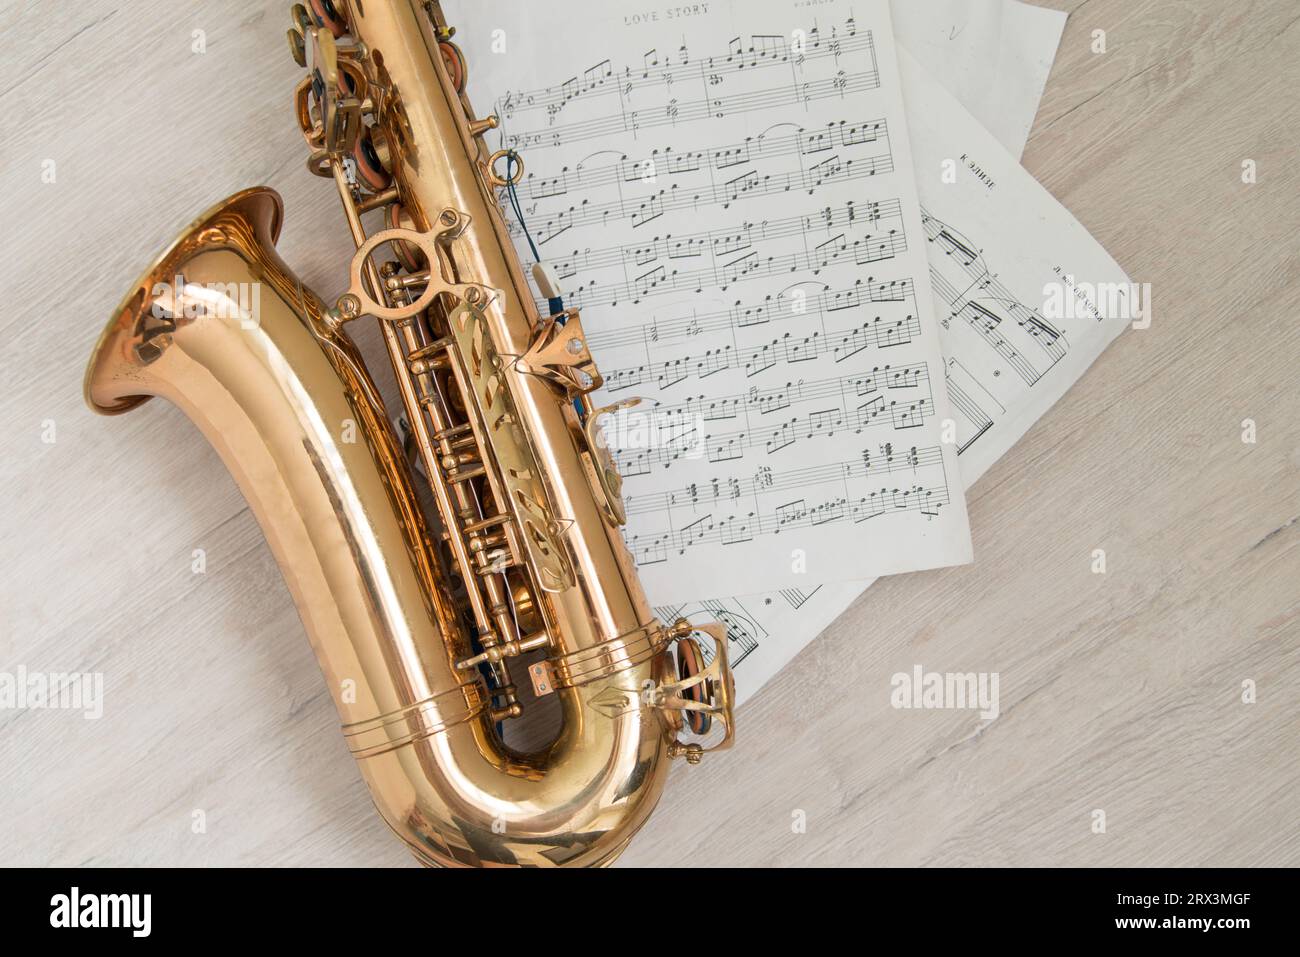 Flatlay-Bild des Saxophons auf den Notizblättern Stockfoto